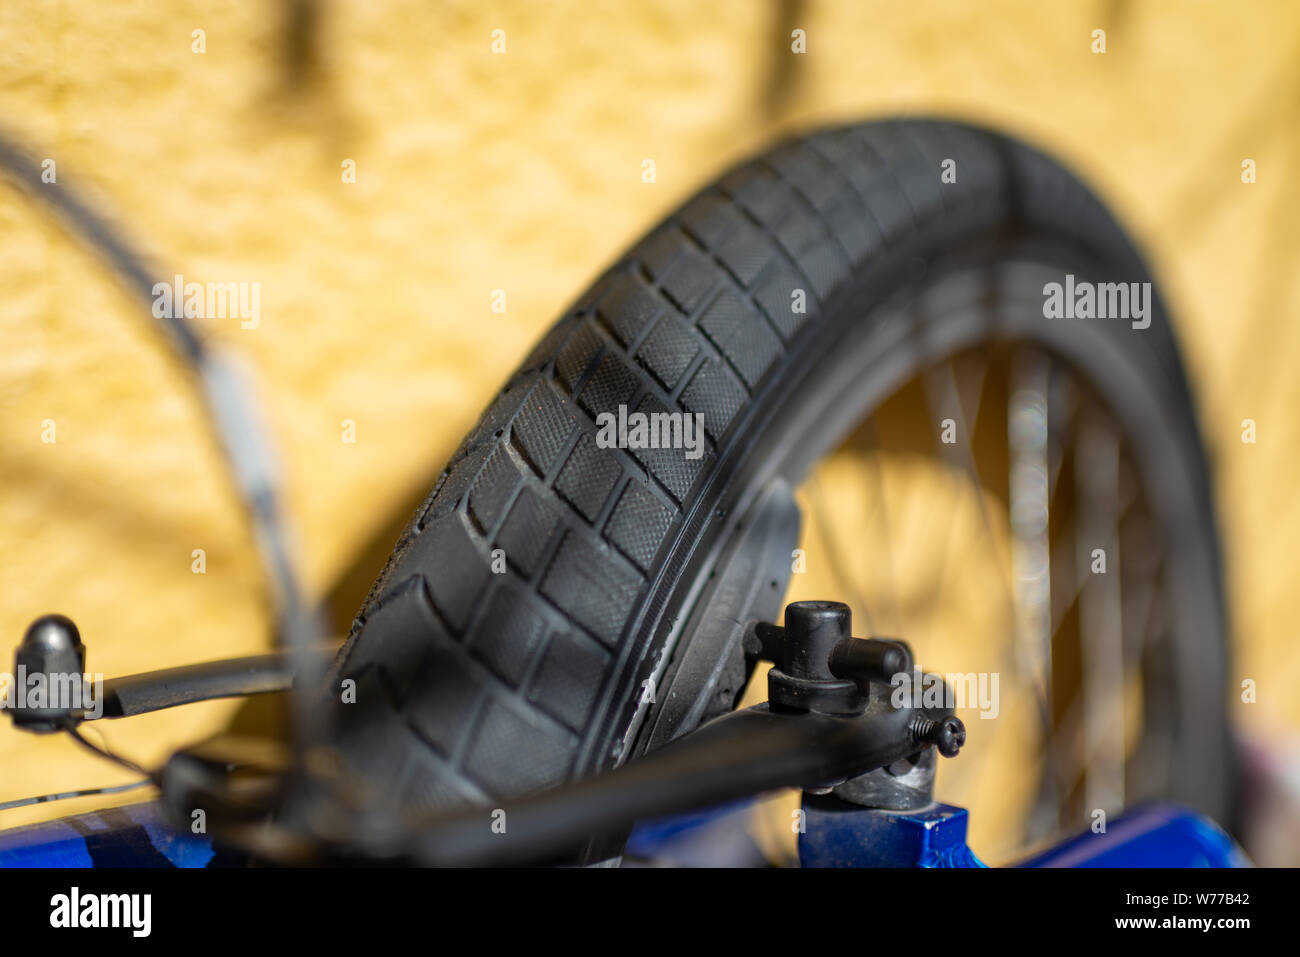 Fahrrad Reifen speichen Nahaufnahme Reiten Reiten Fahrrad Gummi bremsen Pause Bremsventil Achse Metall. Stockfoto